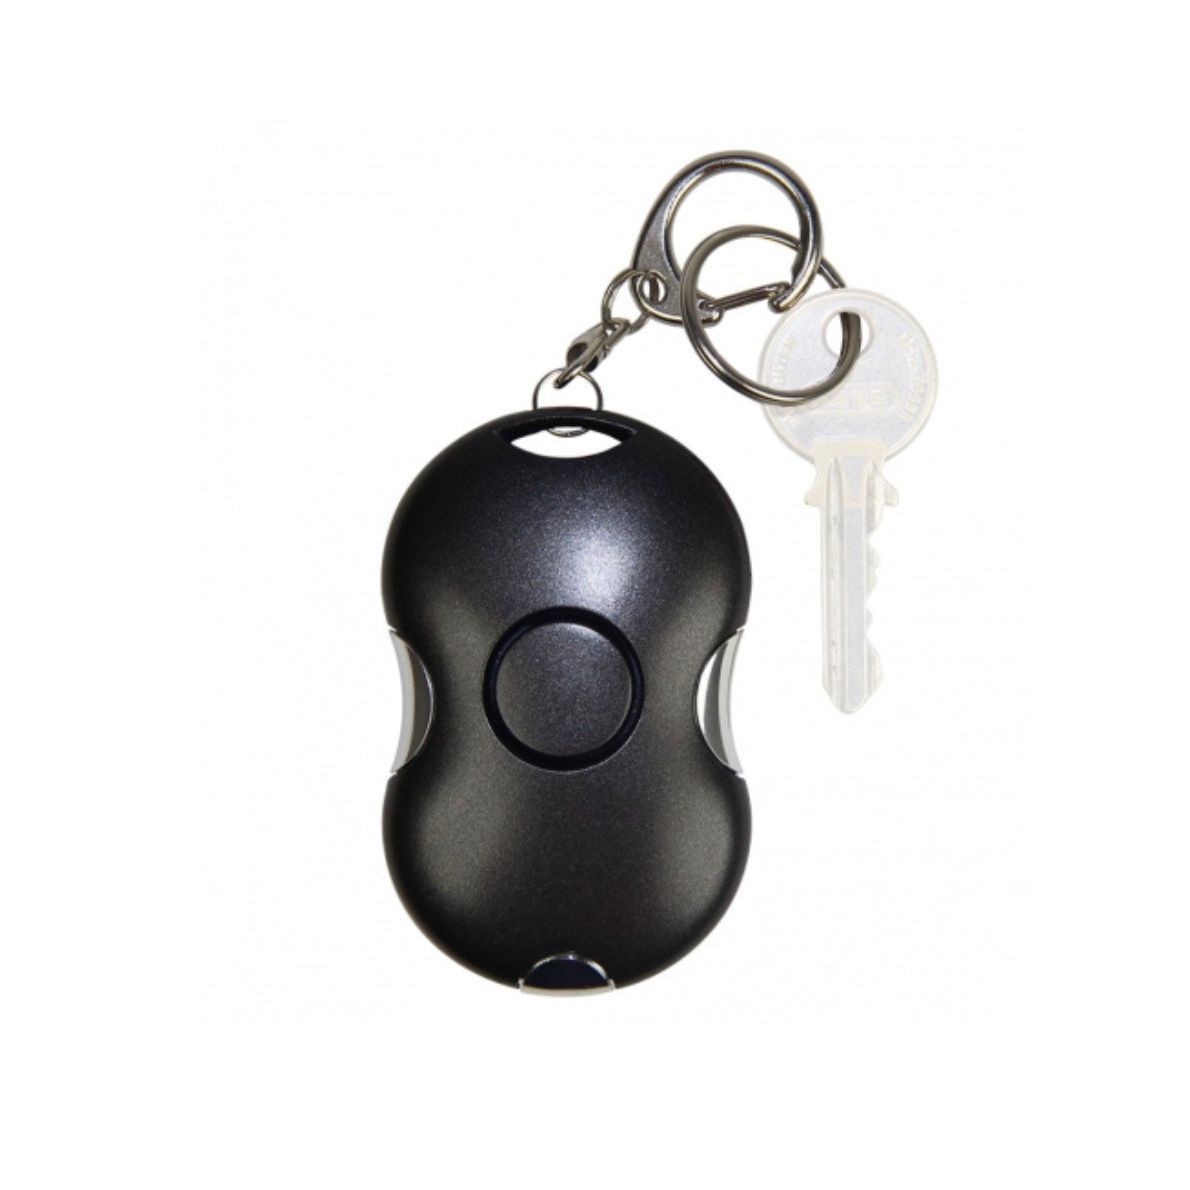 El çantaları veya anahtar demetleri için çift düğmeli 100 dB alarm cihazı